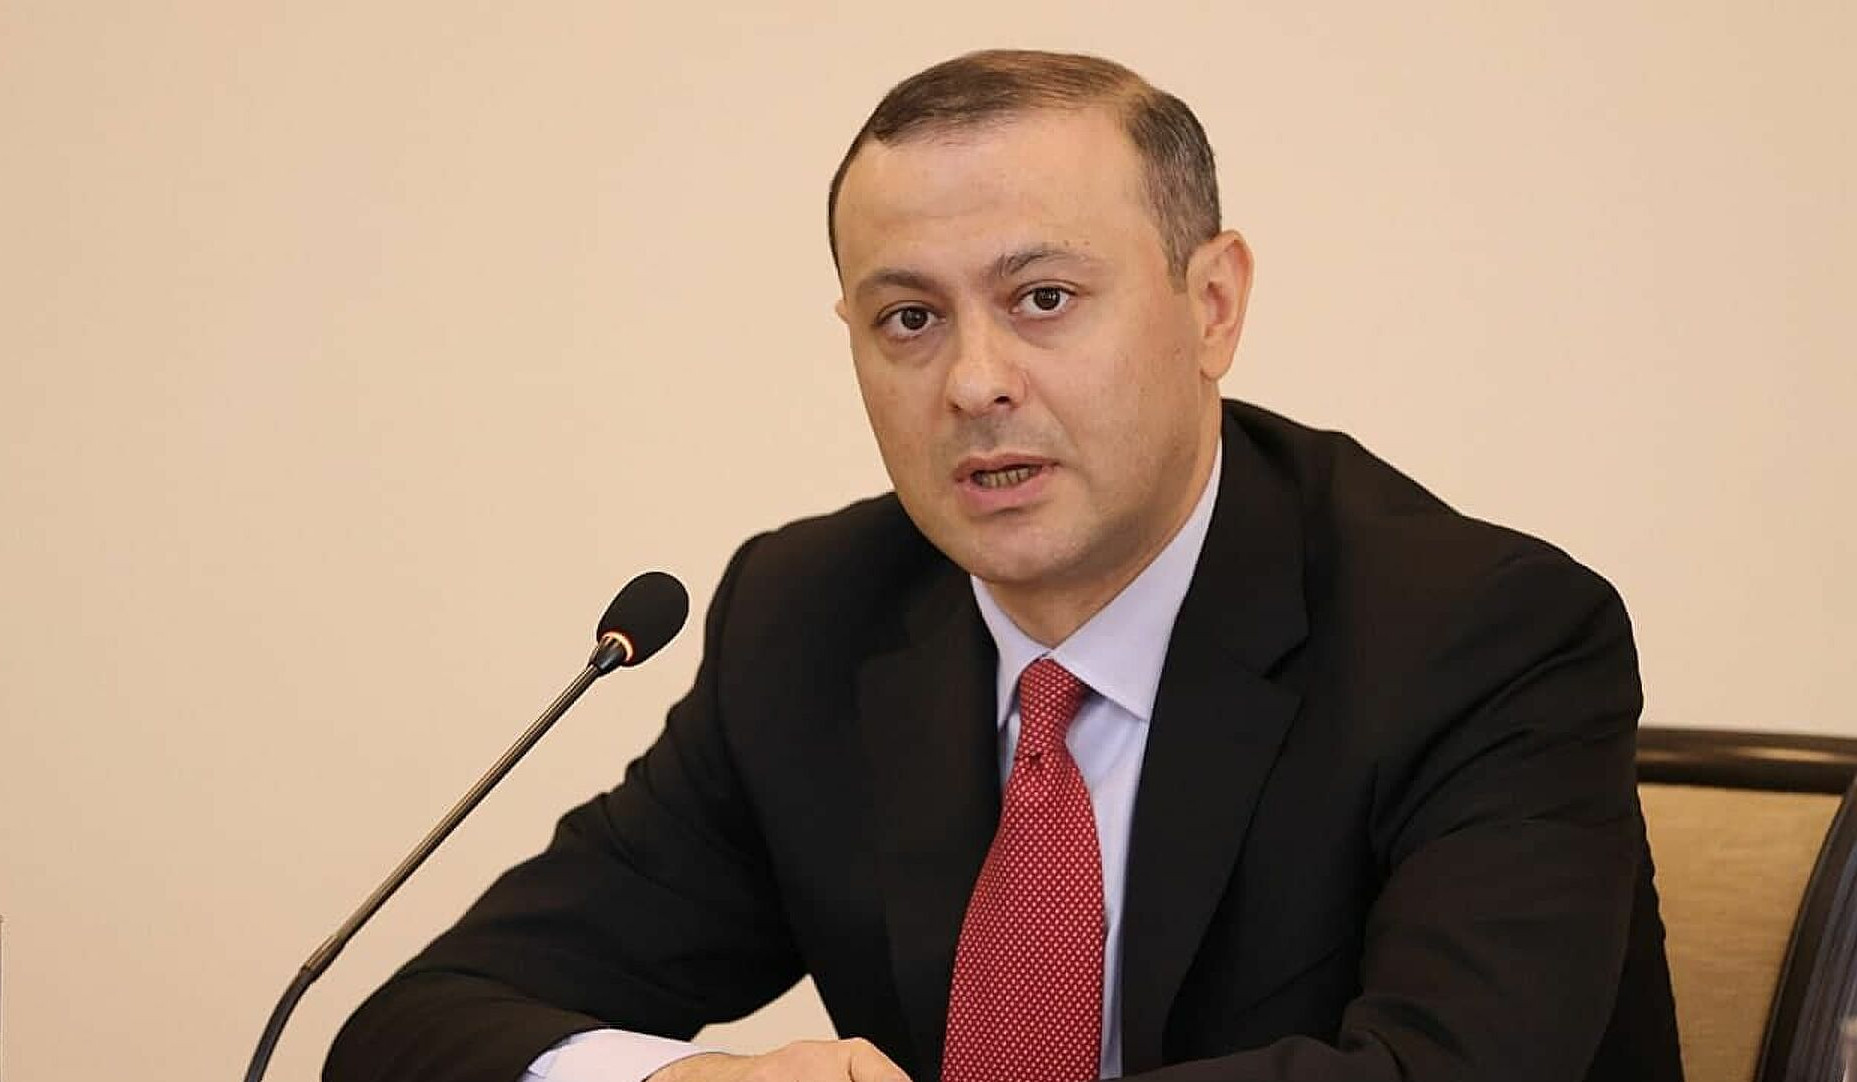 Armenia has not discussed any issue regarding ‘corridor’: Armen Grigoryan